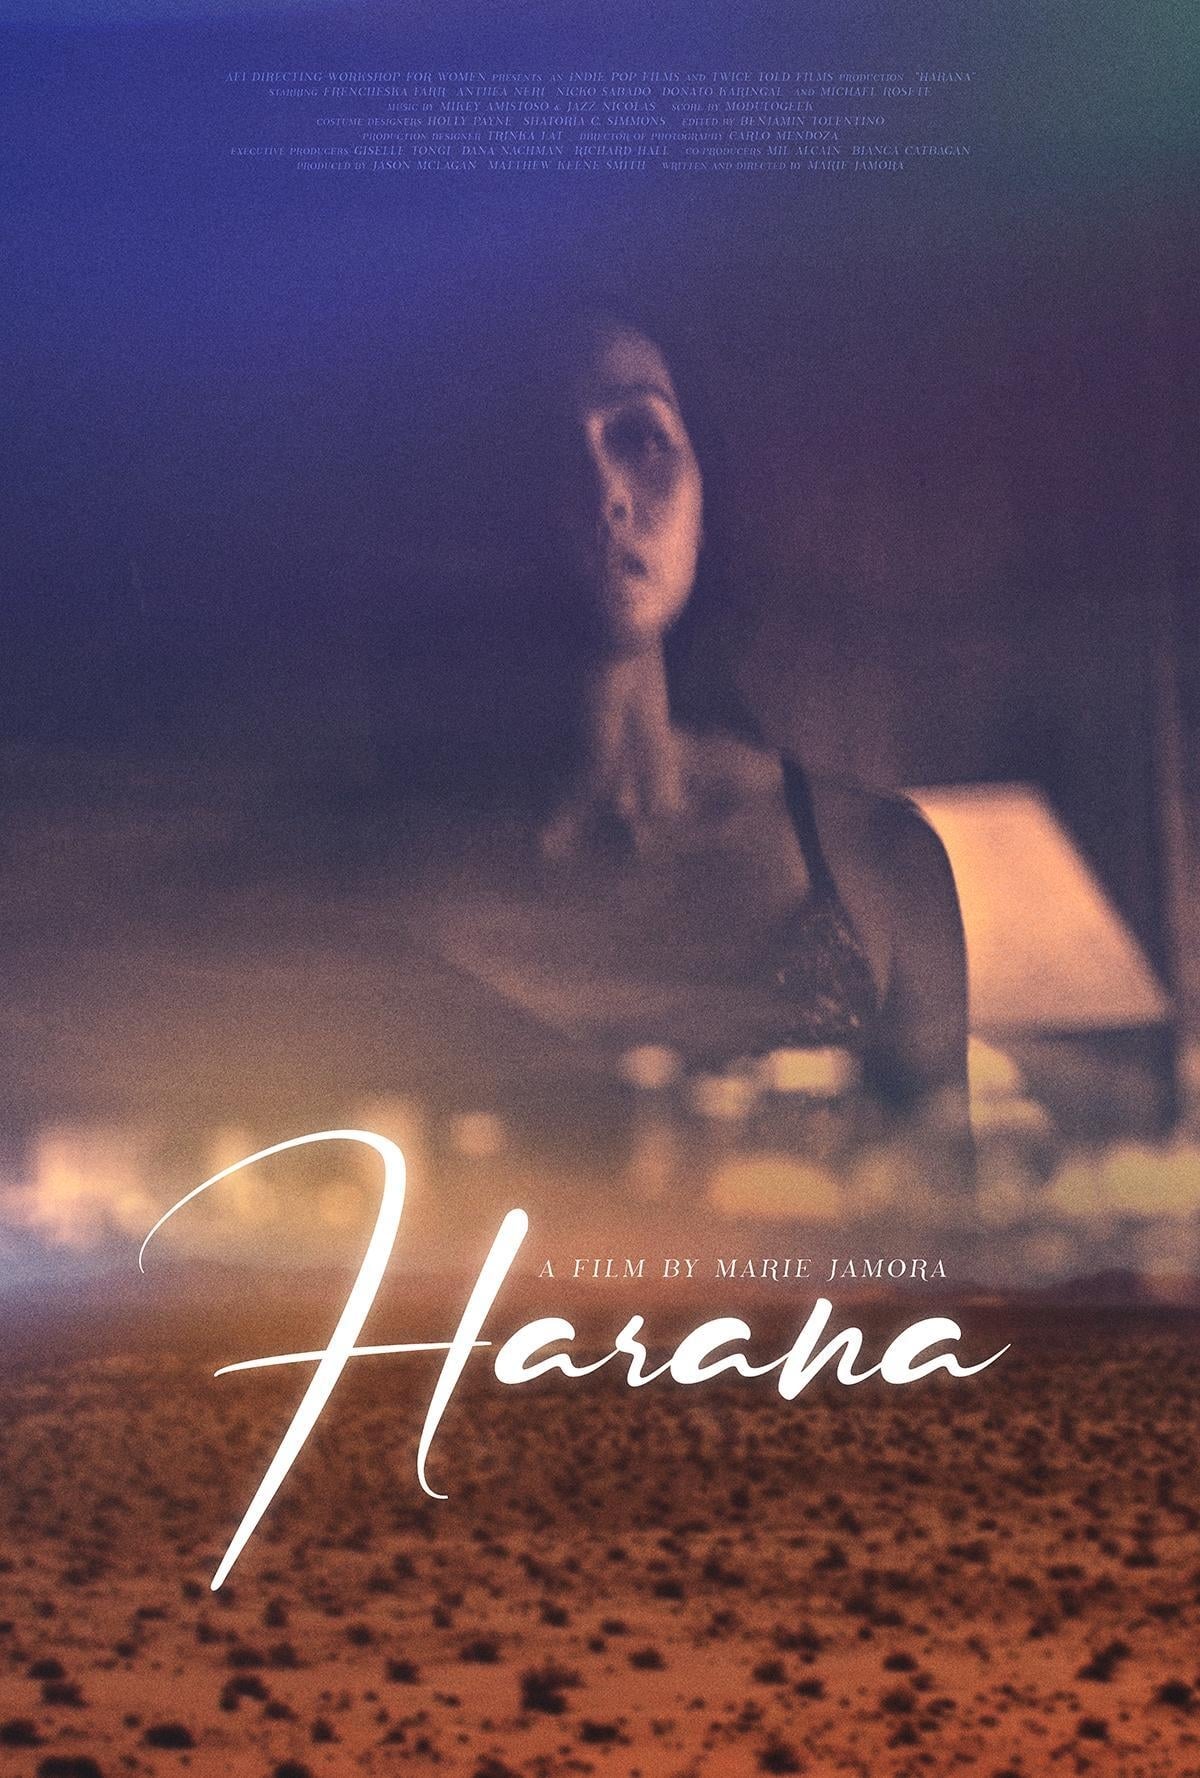 Harana